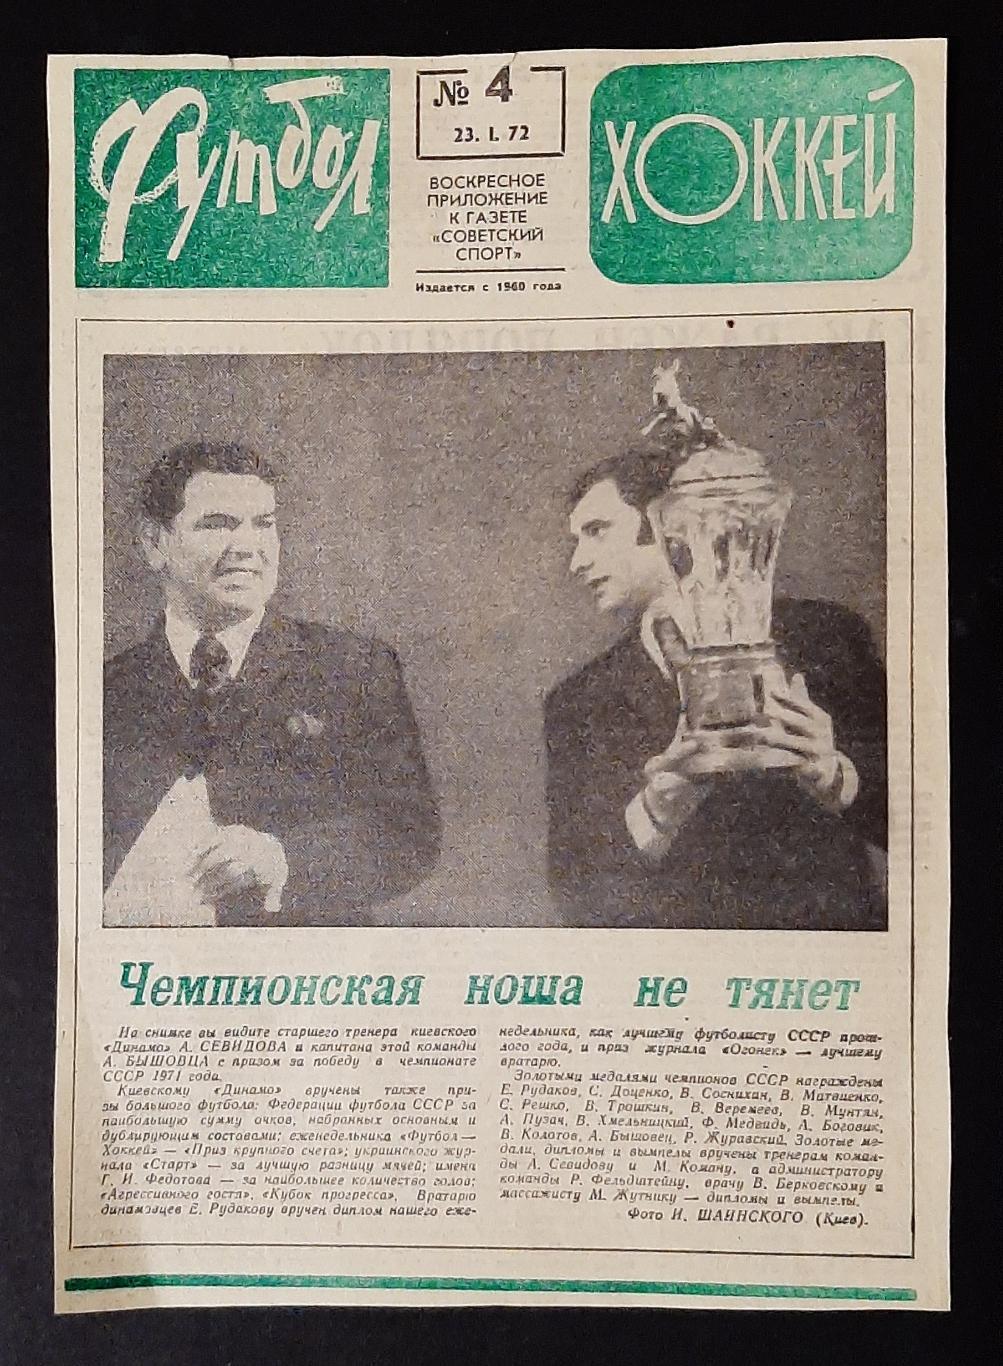 Вирізка з газети Футбол Хоккей #4 (23.01.1972) Севідов, Бишовець